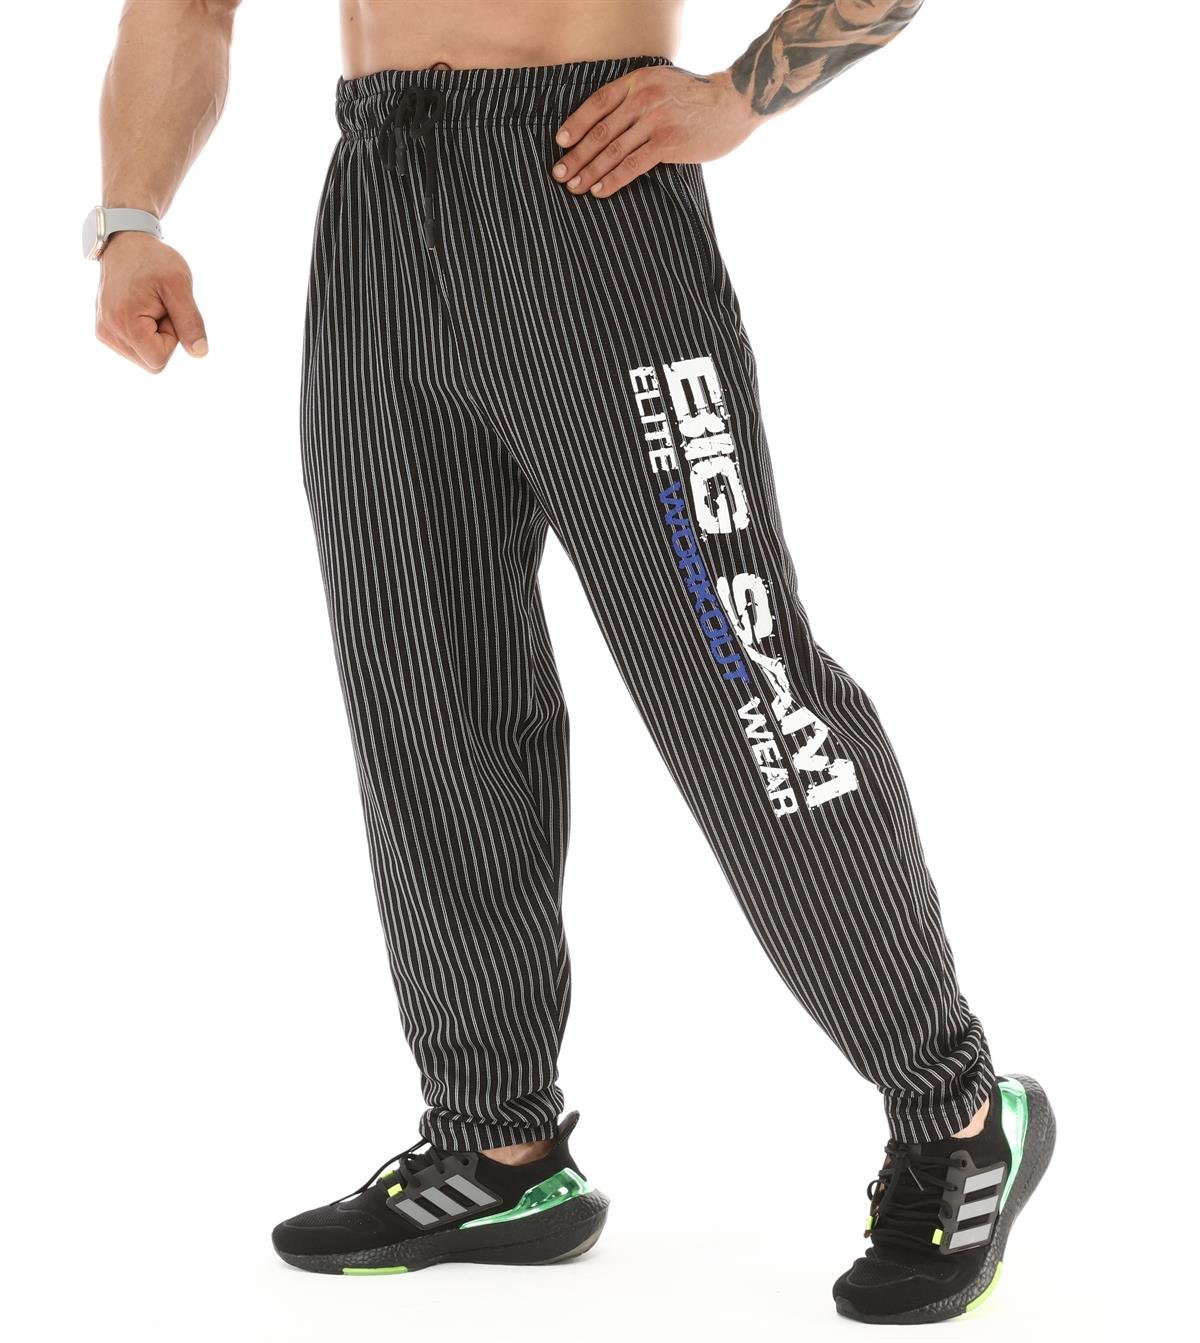 Men's Loose Fit Baggy Swetpants for Gym Big Sam 1181 | bigsam.com